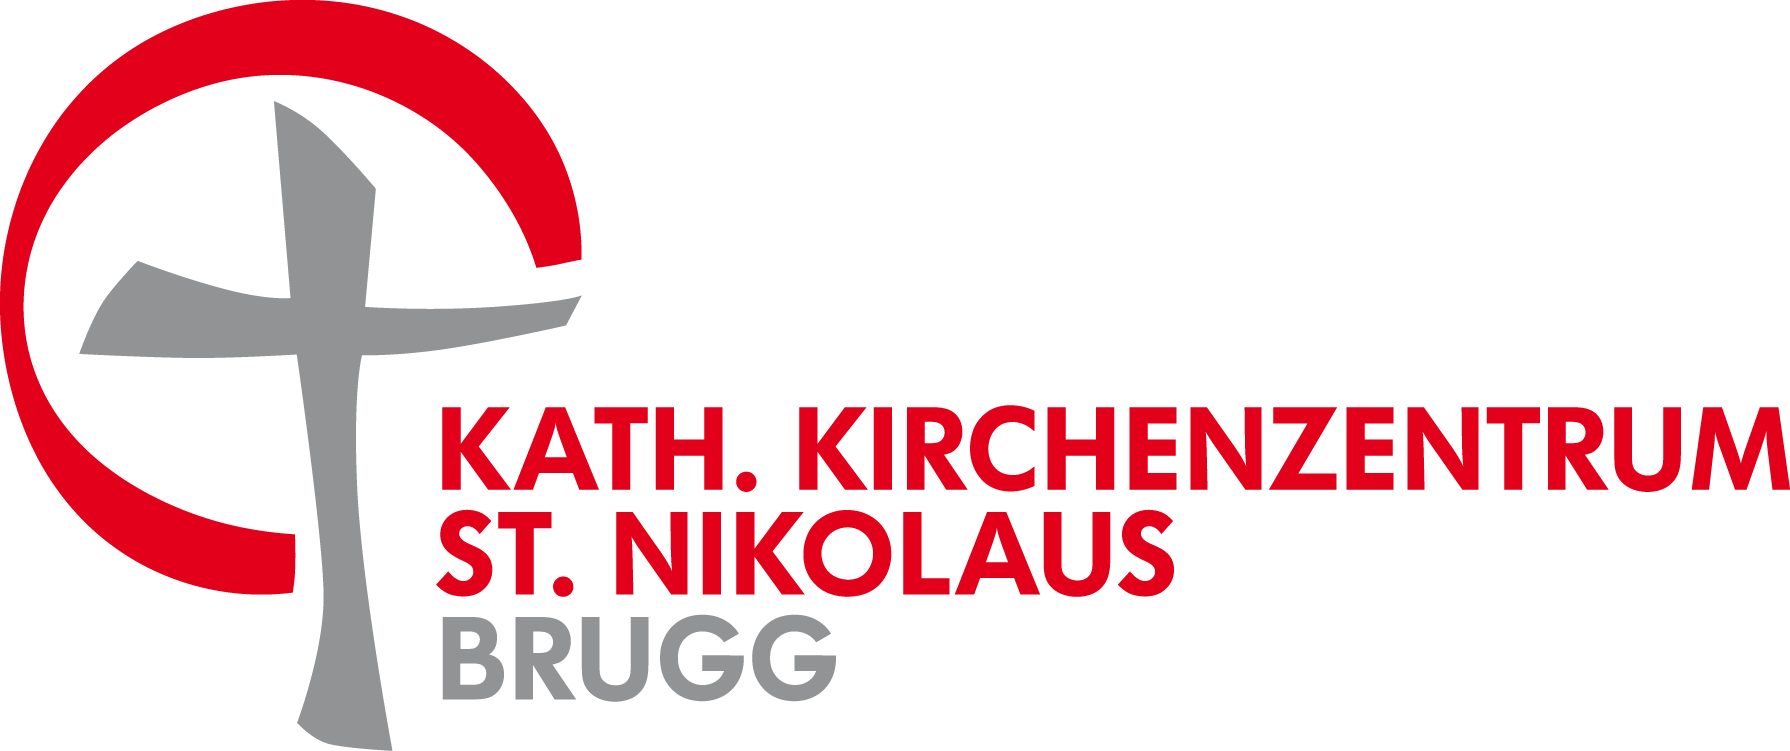 image-11882711-KathKirchenzentrumStNikolausBrugg_Logo-c20ad.png